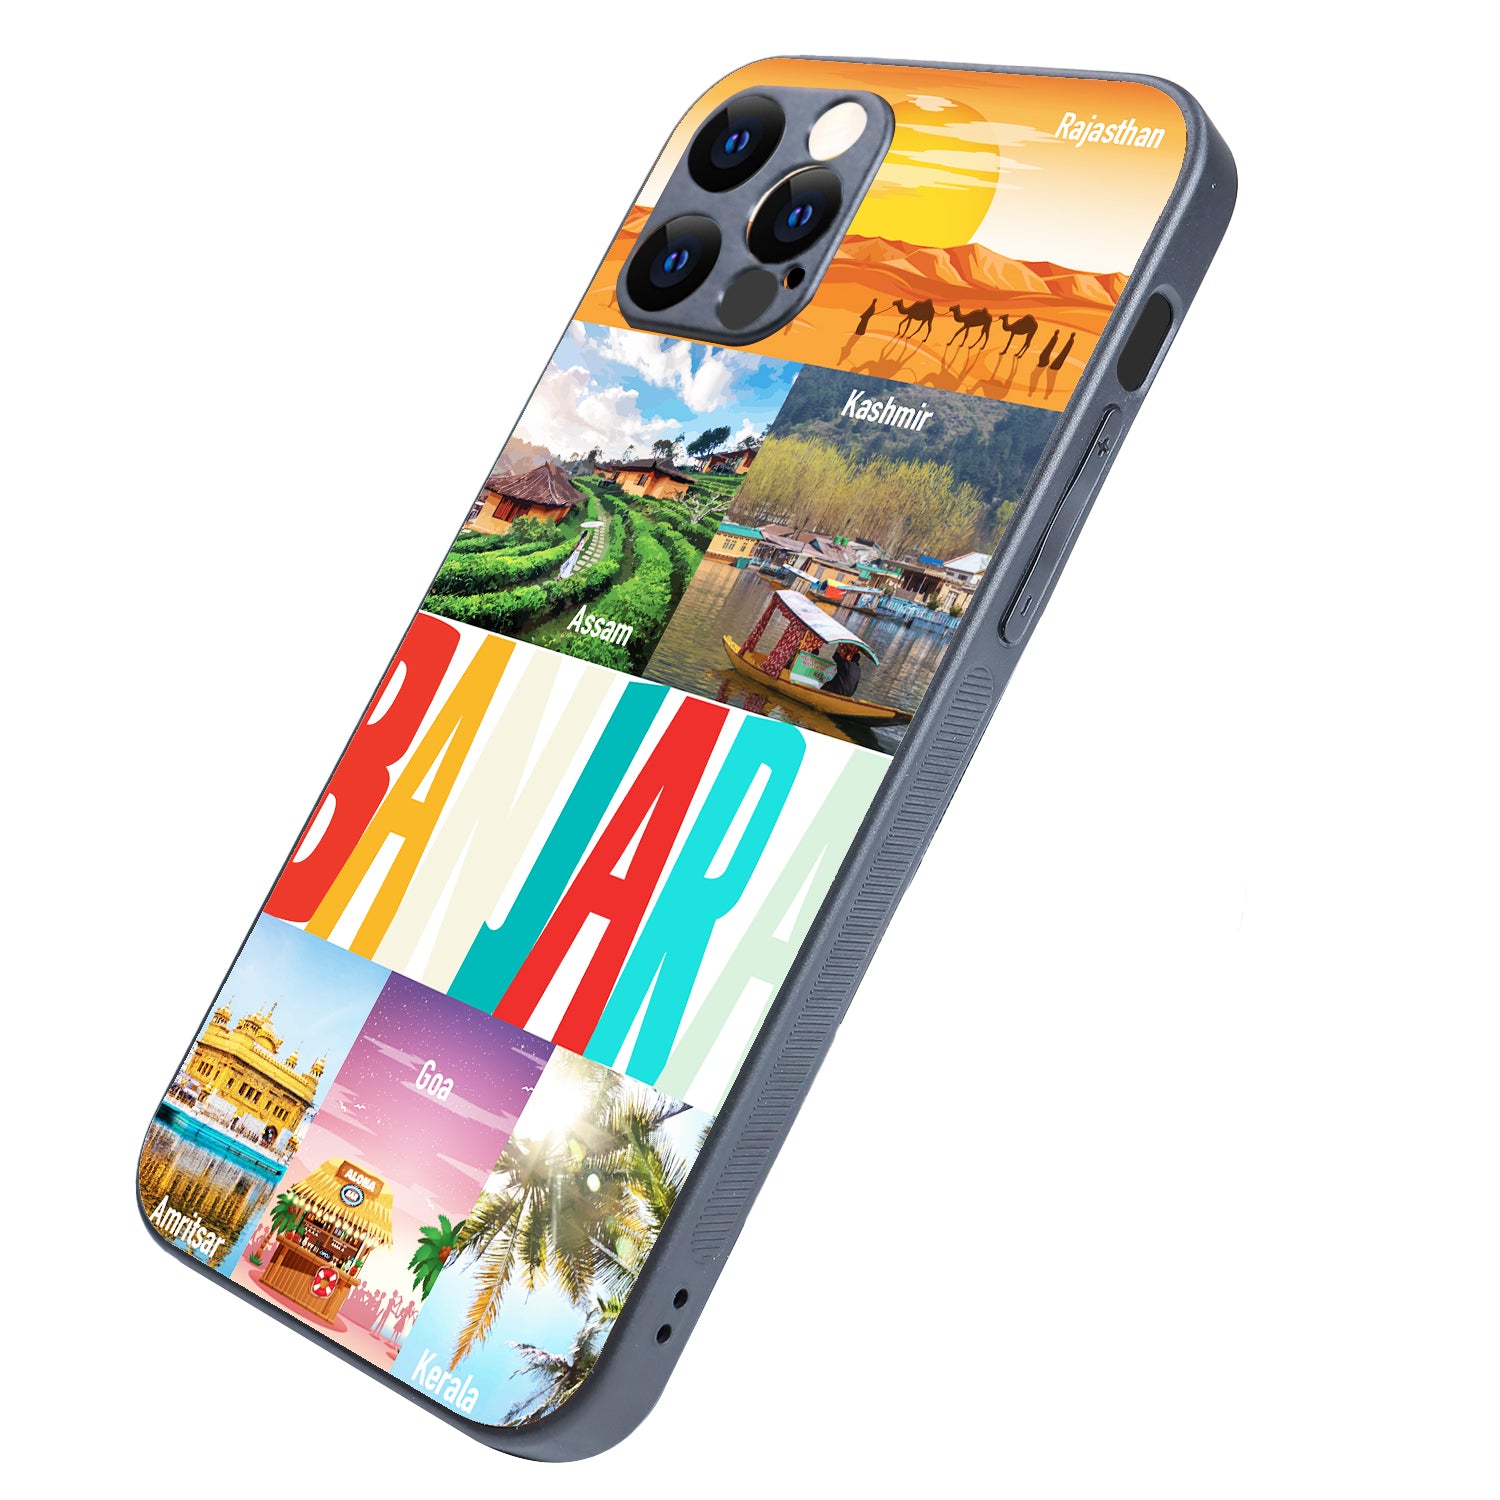 Banjara Travel iPhone 12 Pro Case